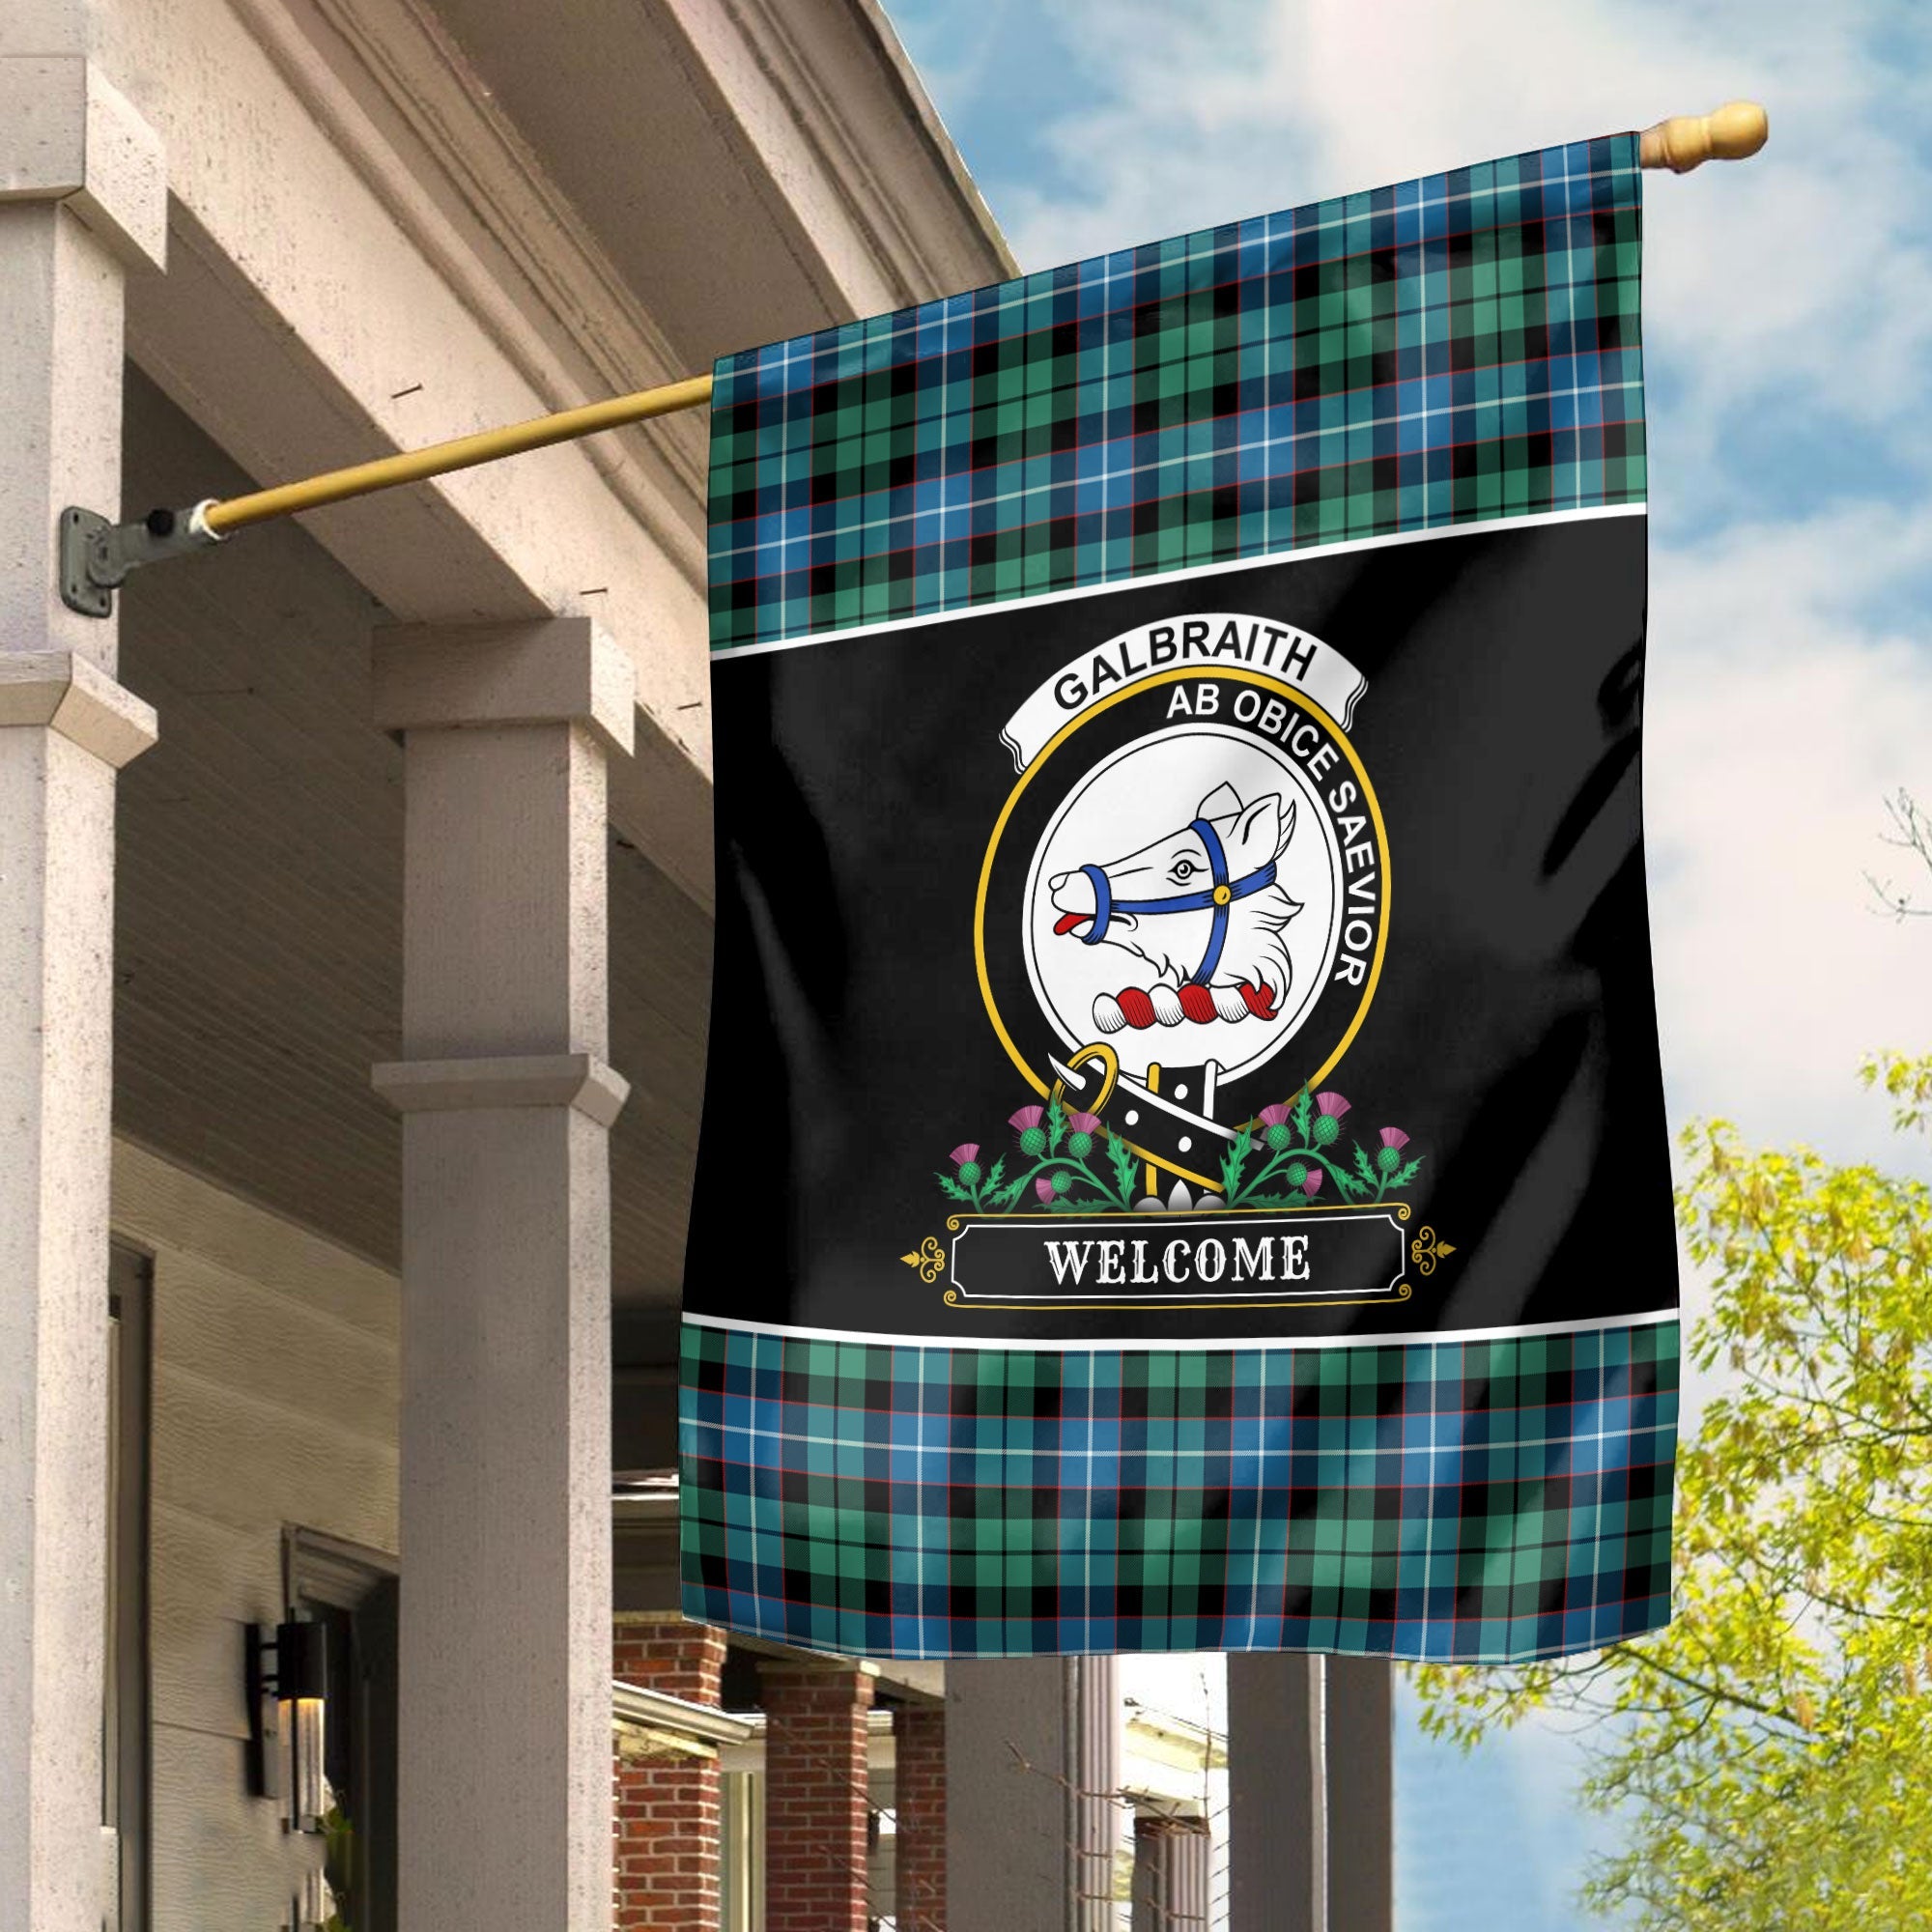 Clan Galbraith Ancient Tartan Crest Garden Flag  - Welcome  IU35 Clan Rait Tartan Today   